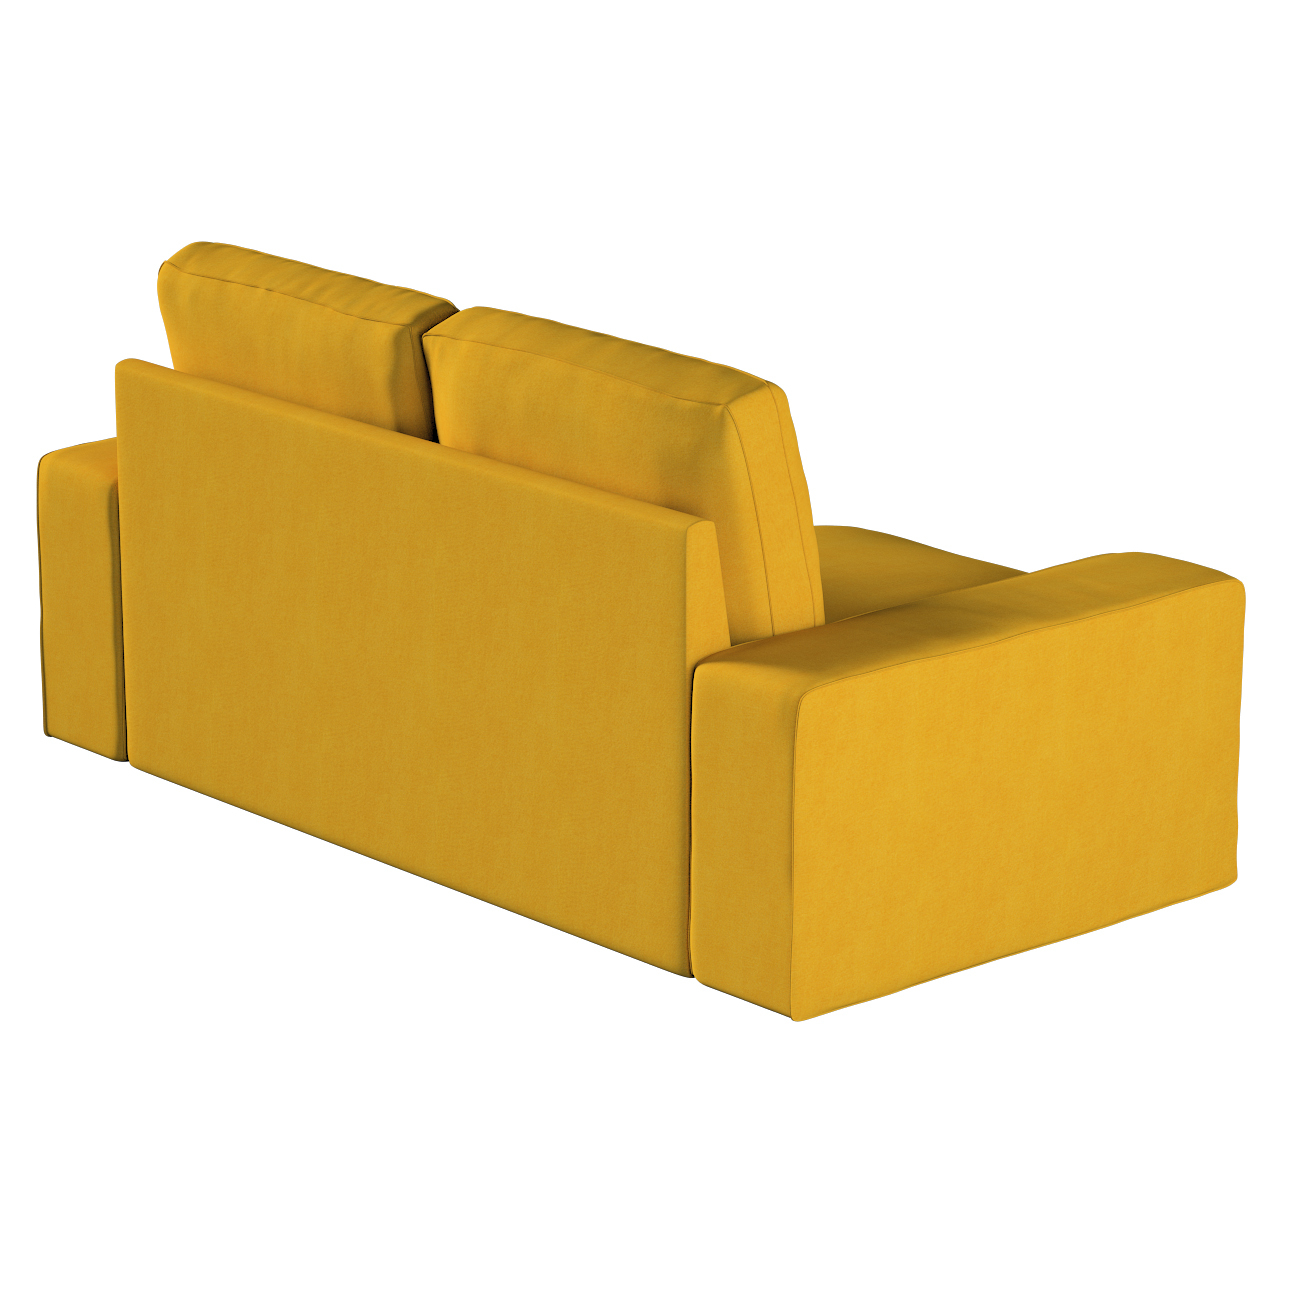 Bezug für Kivik 2-Sitzer Sofa, senffarbe, Bezug für Sofa Kivik 2-Sitzer, Et günstig online kaufen